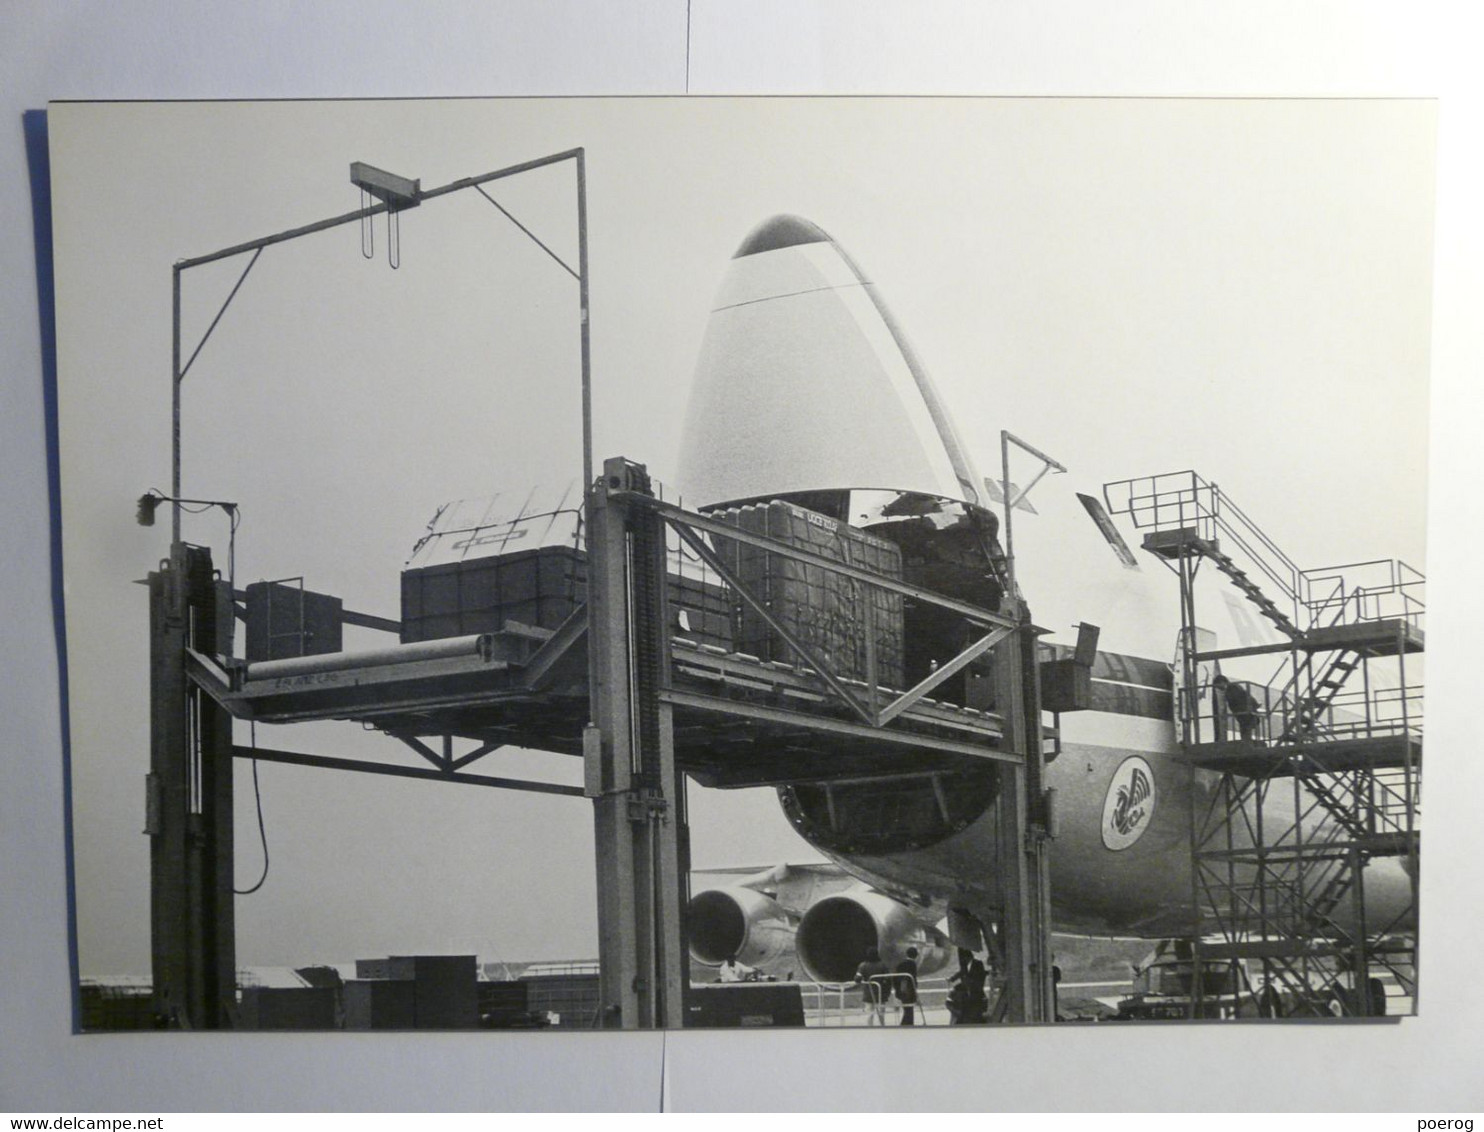 8 PHOTOS AVIONS AIR FRANCE DANS LEUR ENVELOPPE - SERVICE INFORMATION 1974 - CONCORDE BOEING 747 AIRBUS A300 CARAVELLE - Flugzeuge